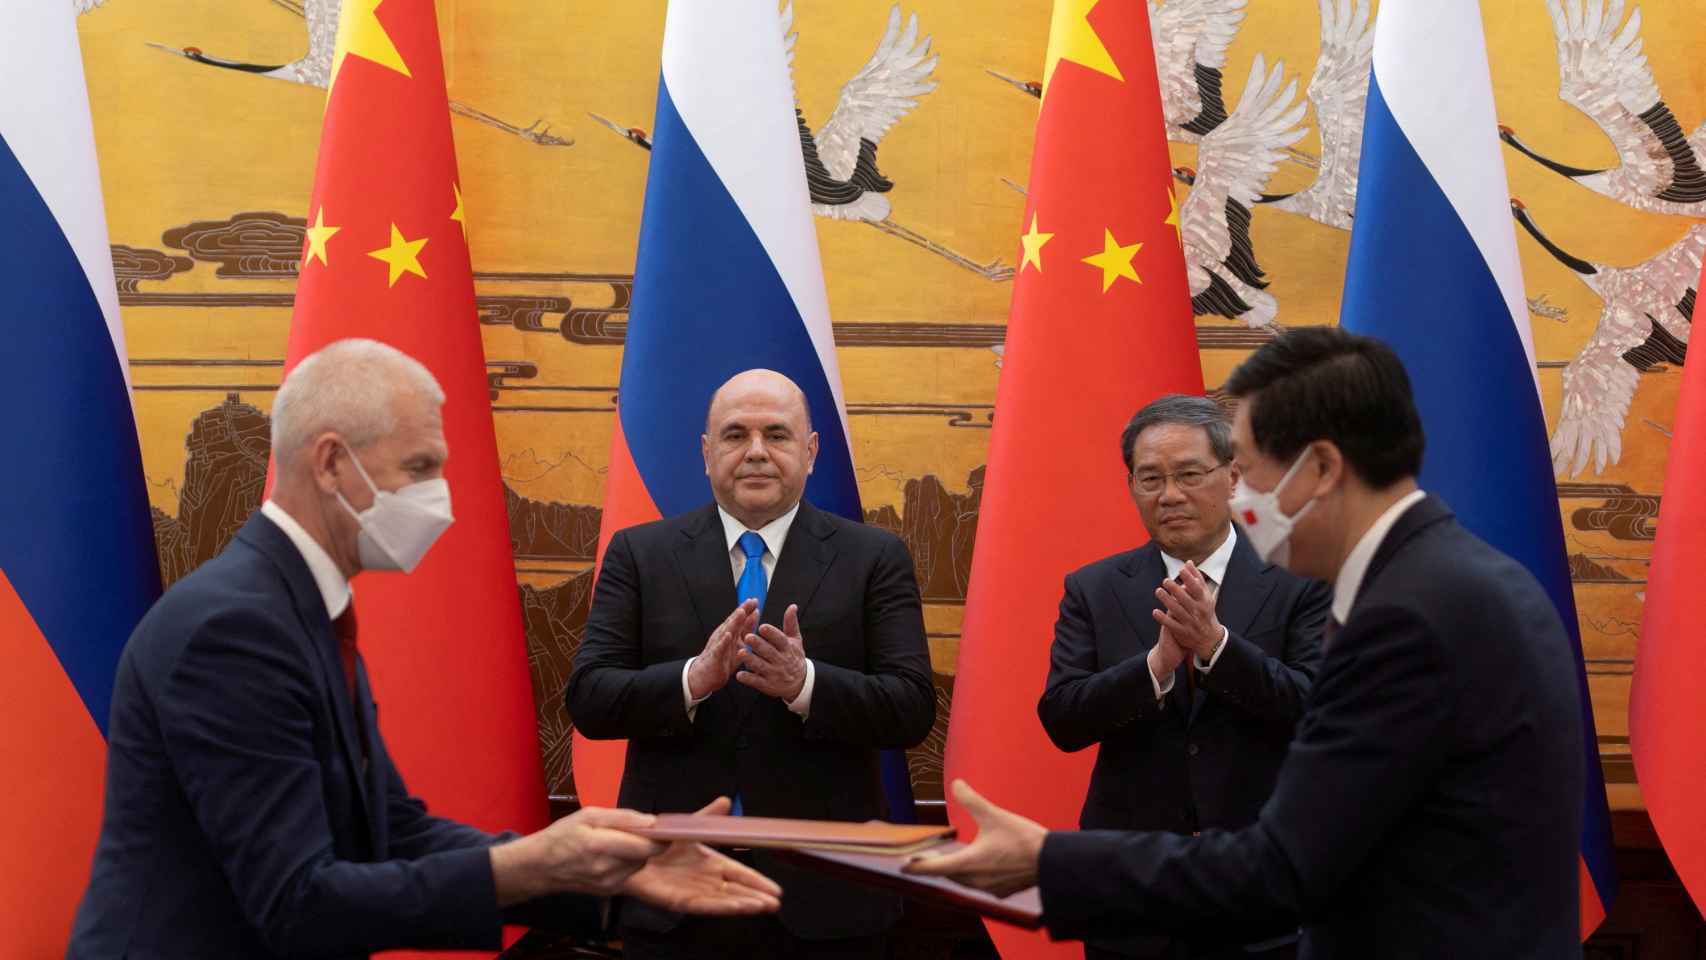 El primer ministro chino y el primer ministro ruso durante una ceremonia en Pekín.